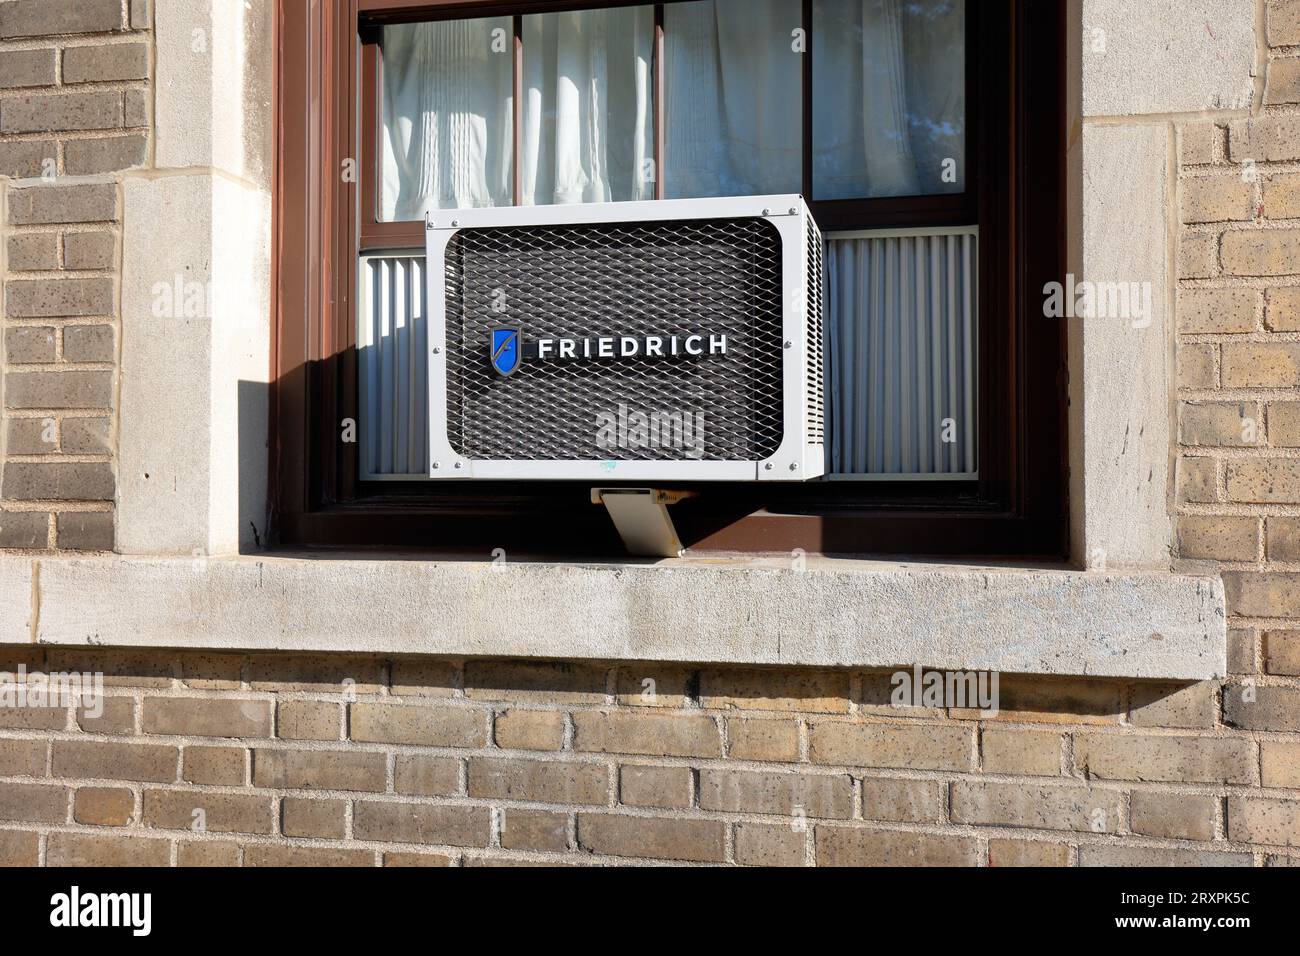 Un condizionatore d'aria Friedrich. unità di climatizzazione friedrich montata in una finestra. Foto Stock